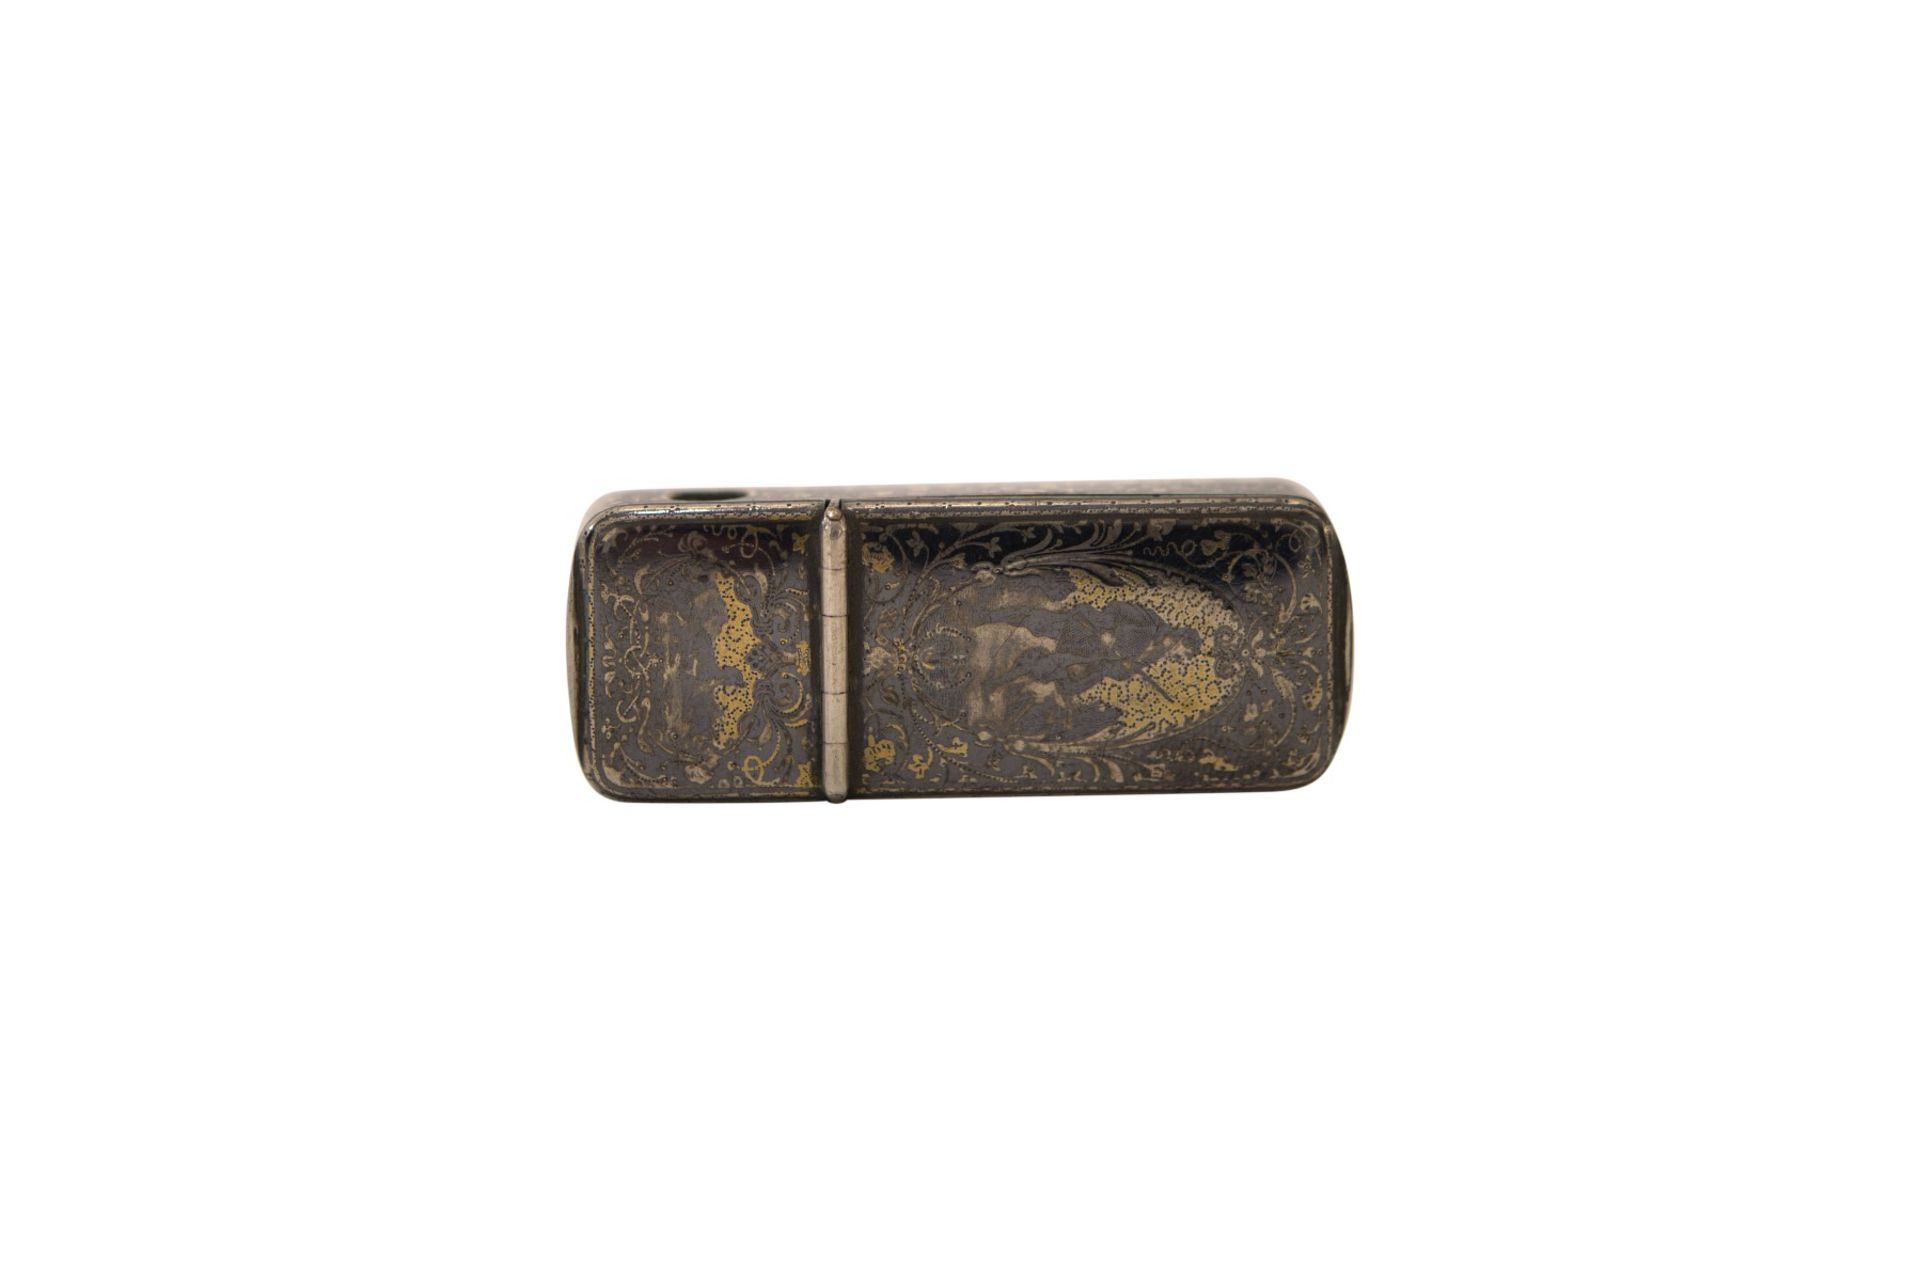 Cigar cutter case silver 800/000 fine